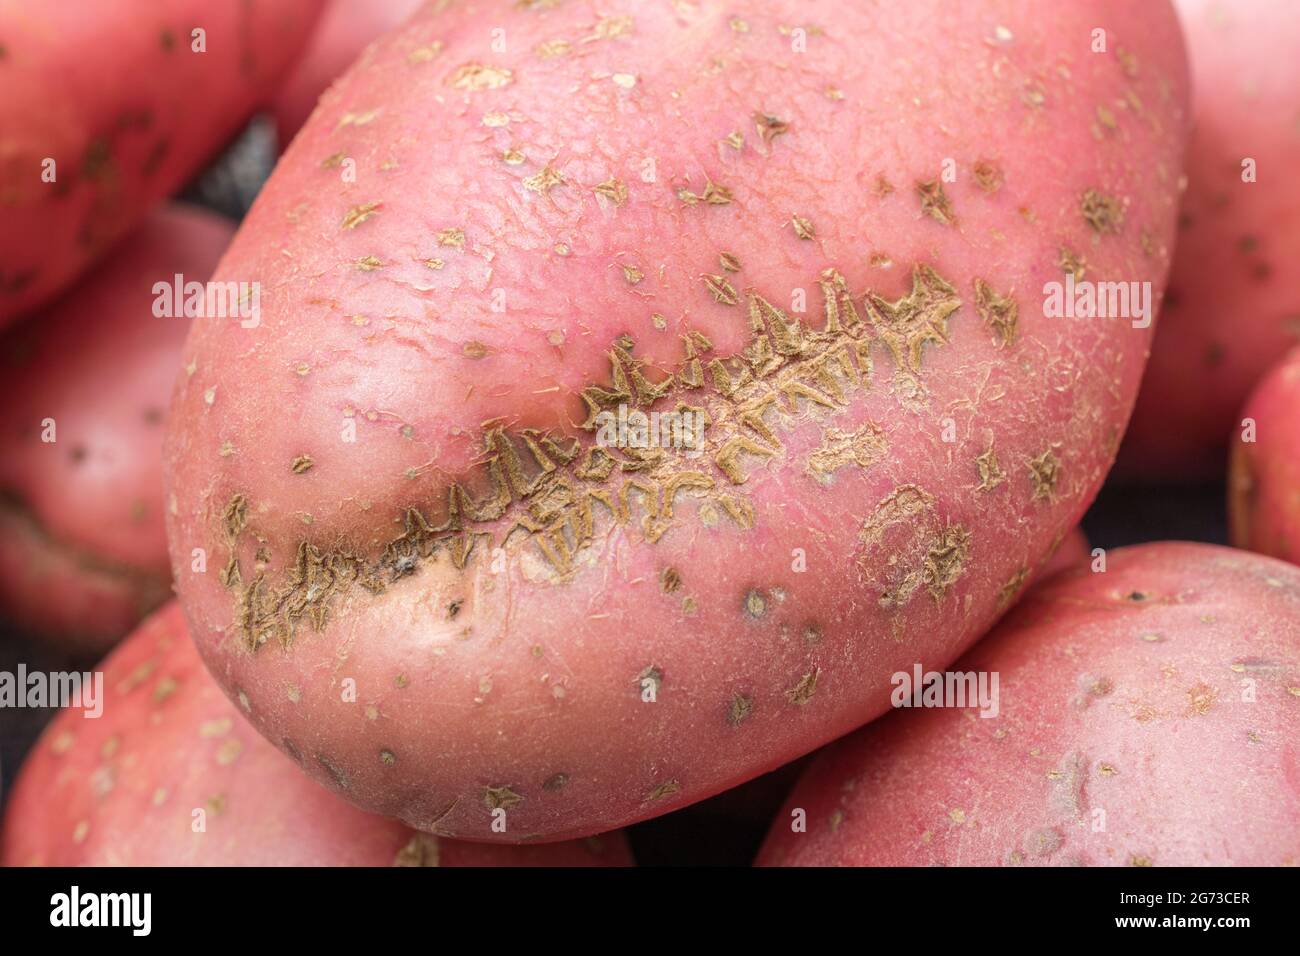 Pomme de terre rouge / rousse cultivée au Royaume-Uni. Les pommes de terre ont une maladie présente [qui peut être la gale commune, ou peut-être la gale poudreuse]. Banque D'Images